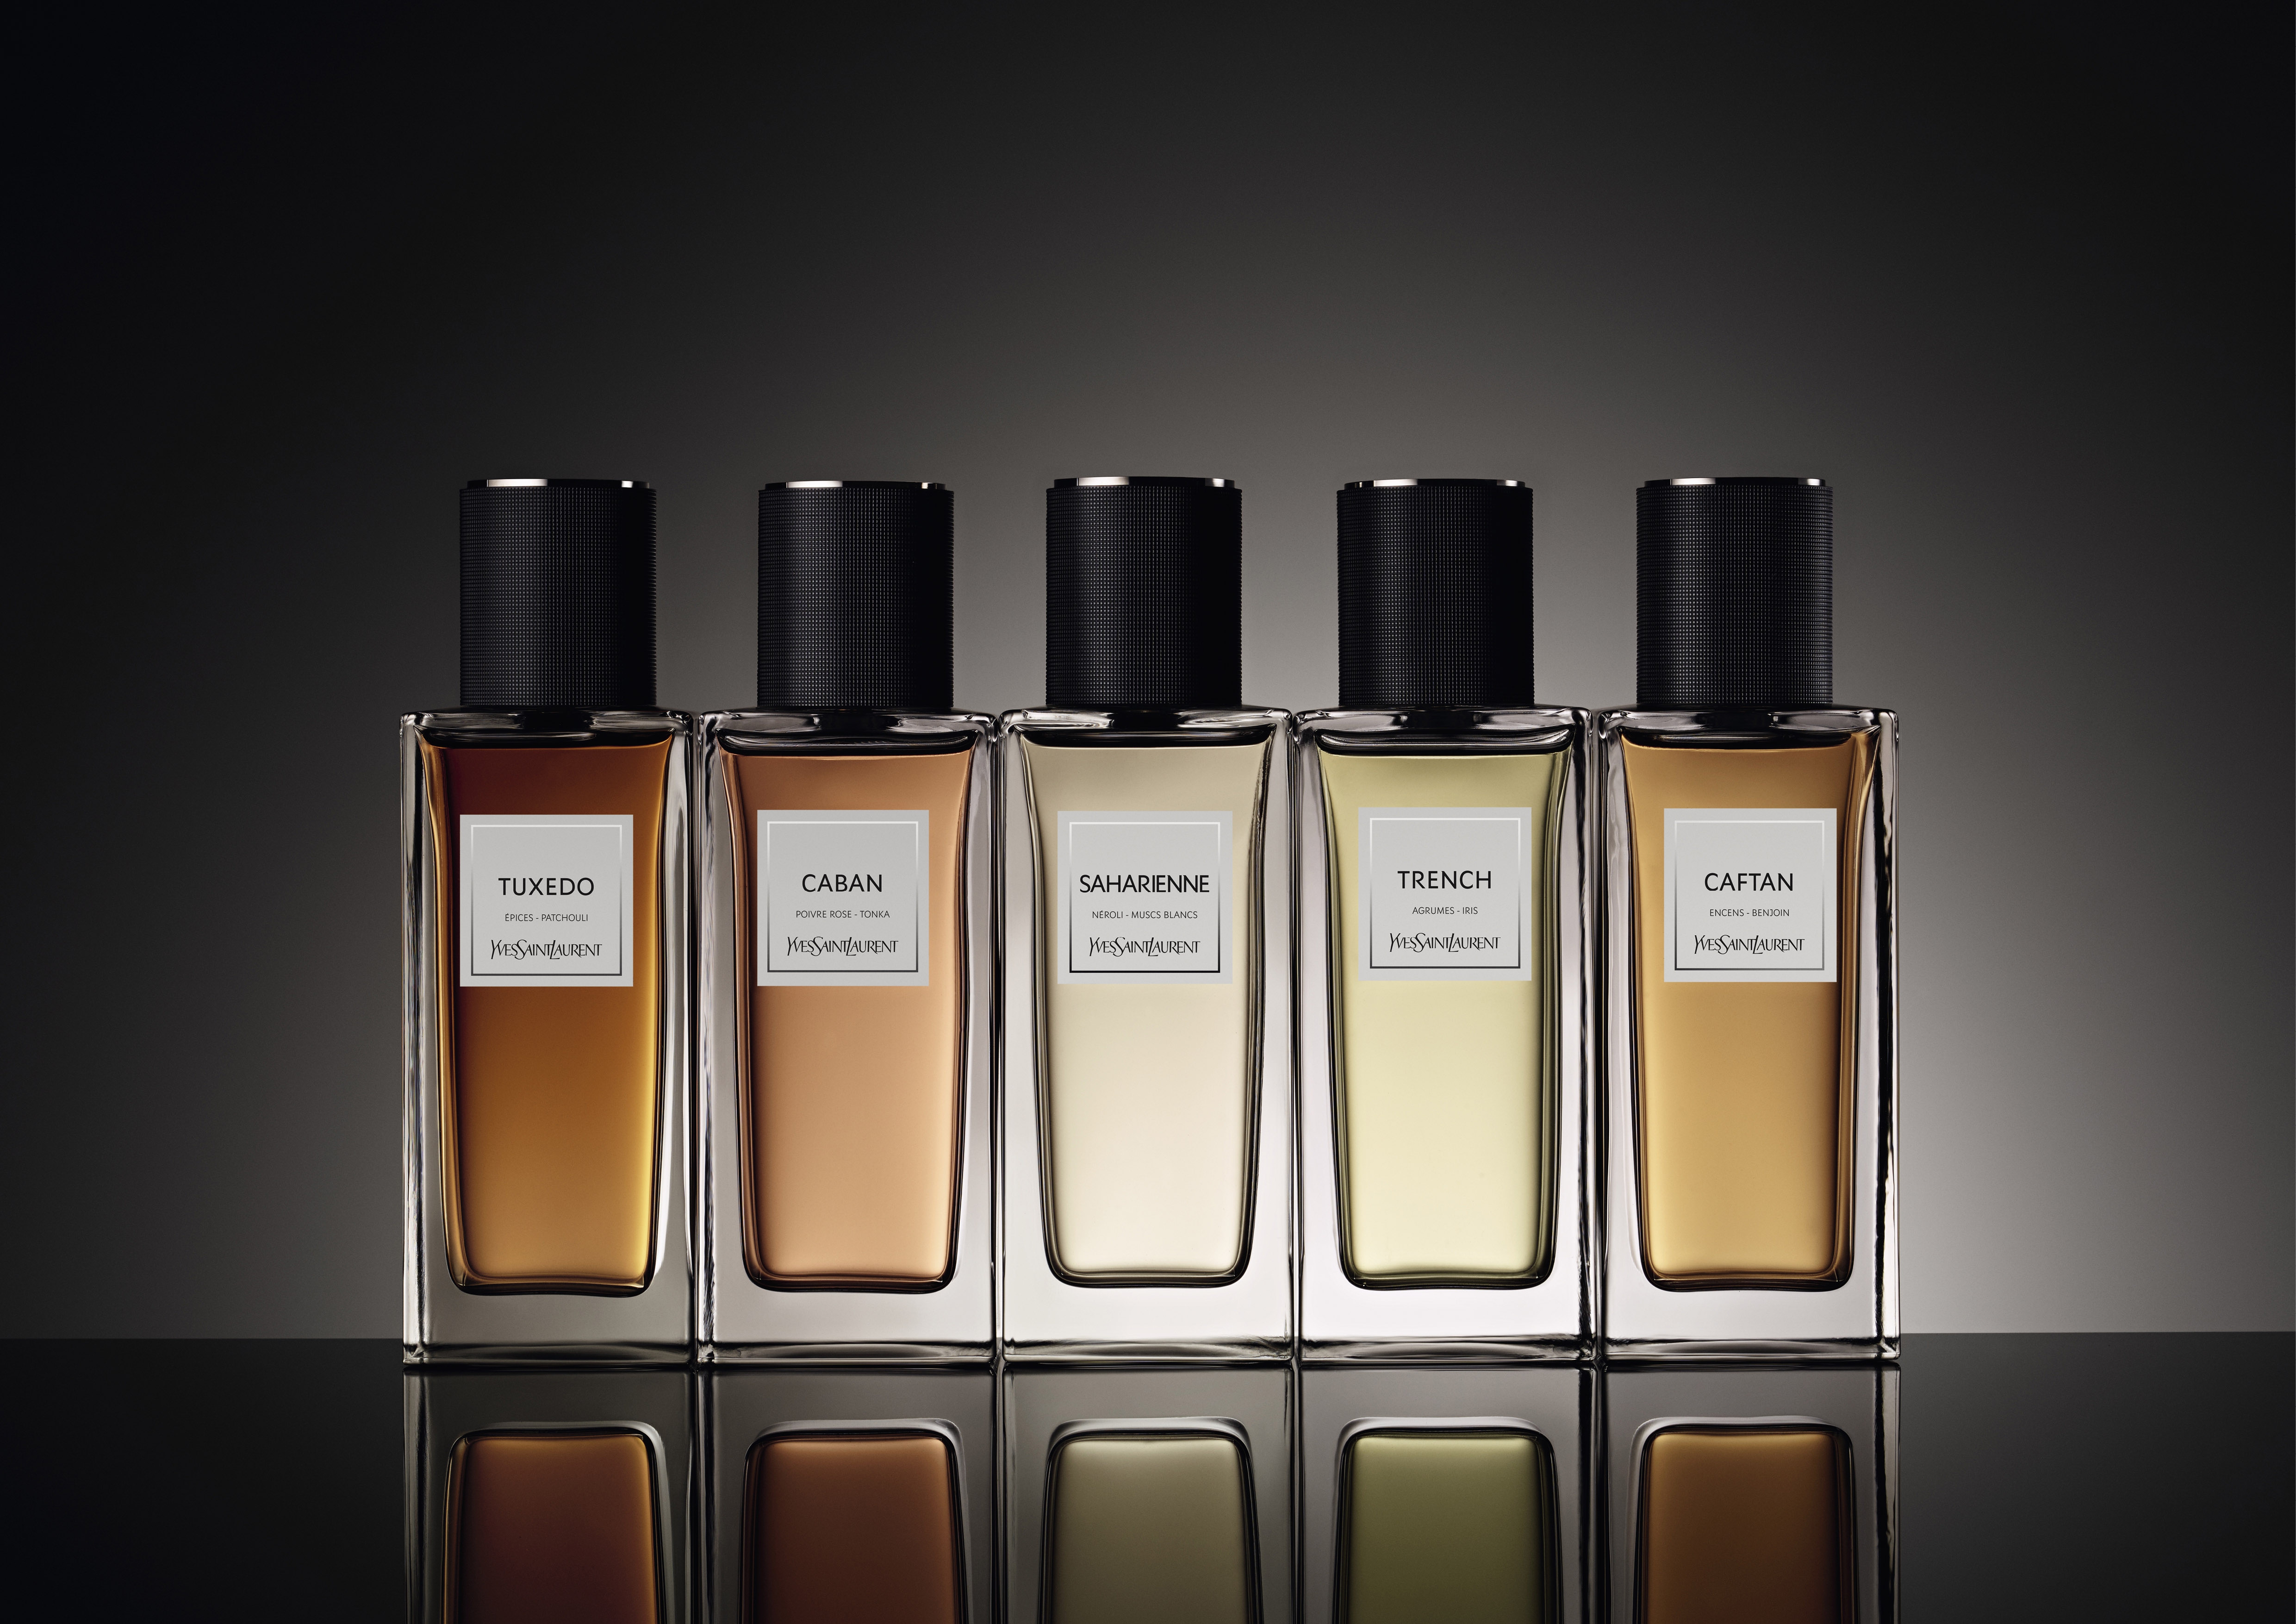 Behind the scenes of Le Vestiaire des Parfums by Yves Saint Laurent